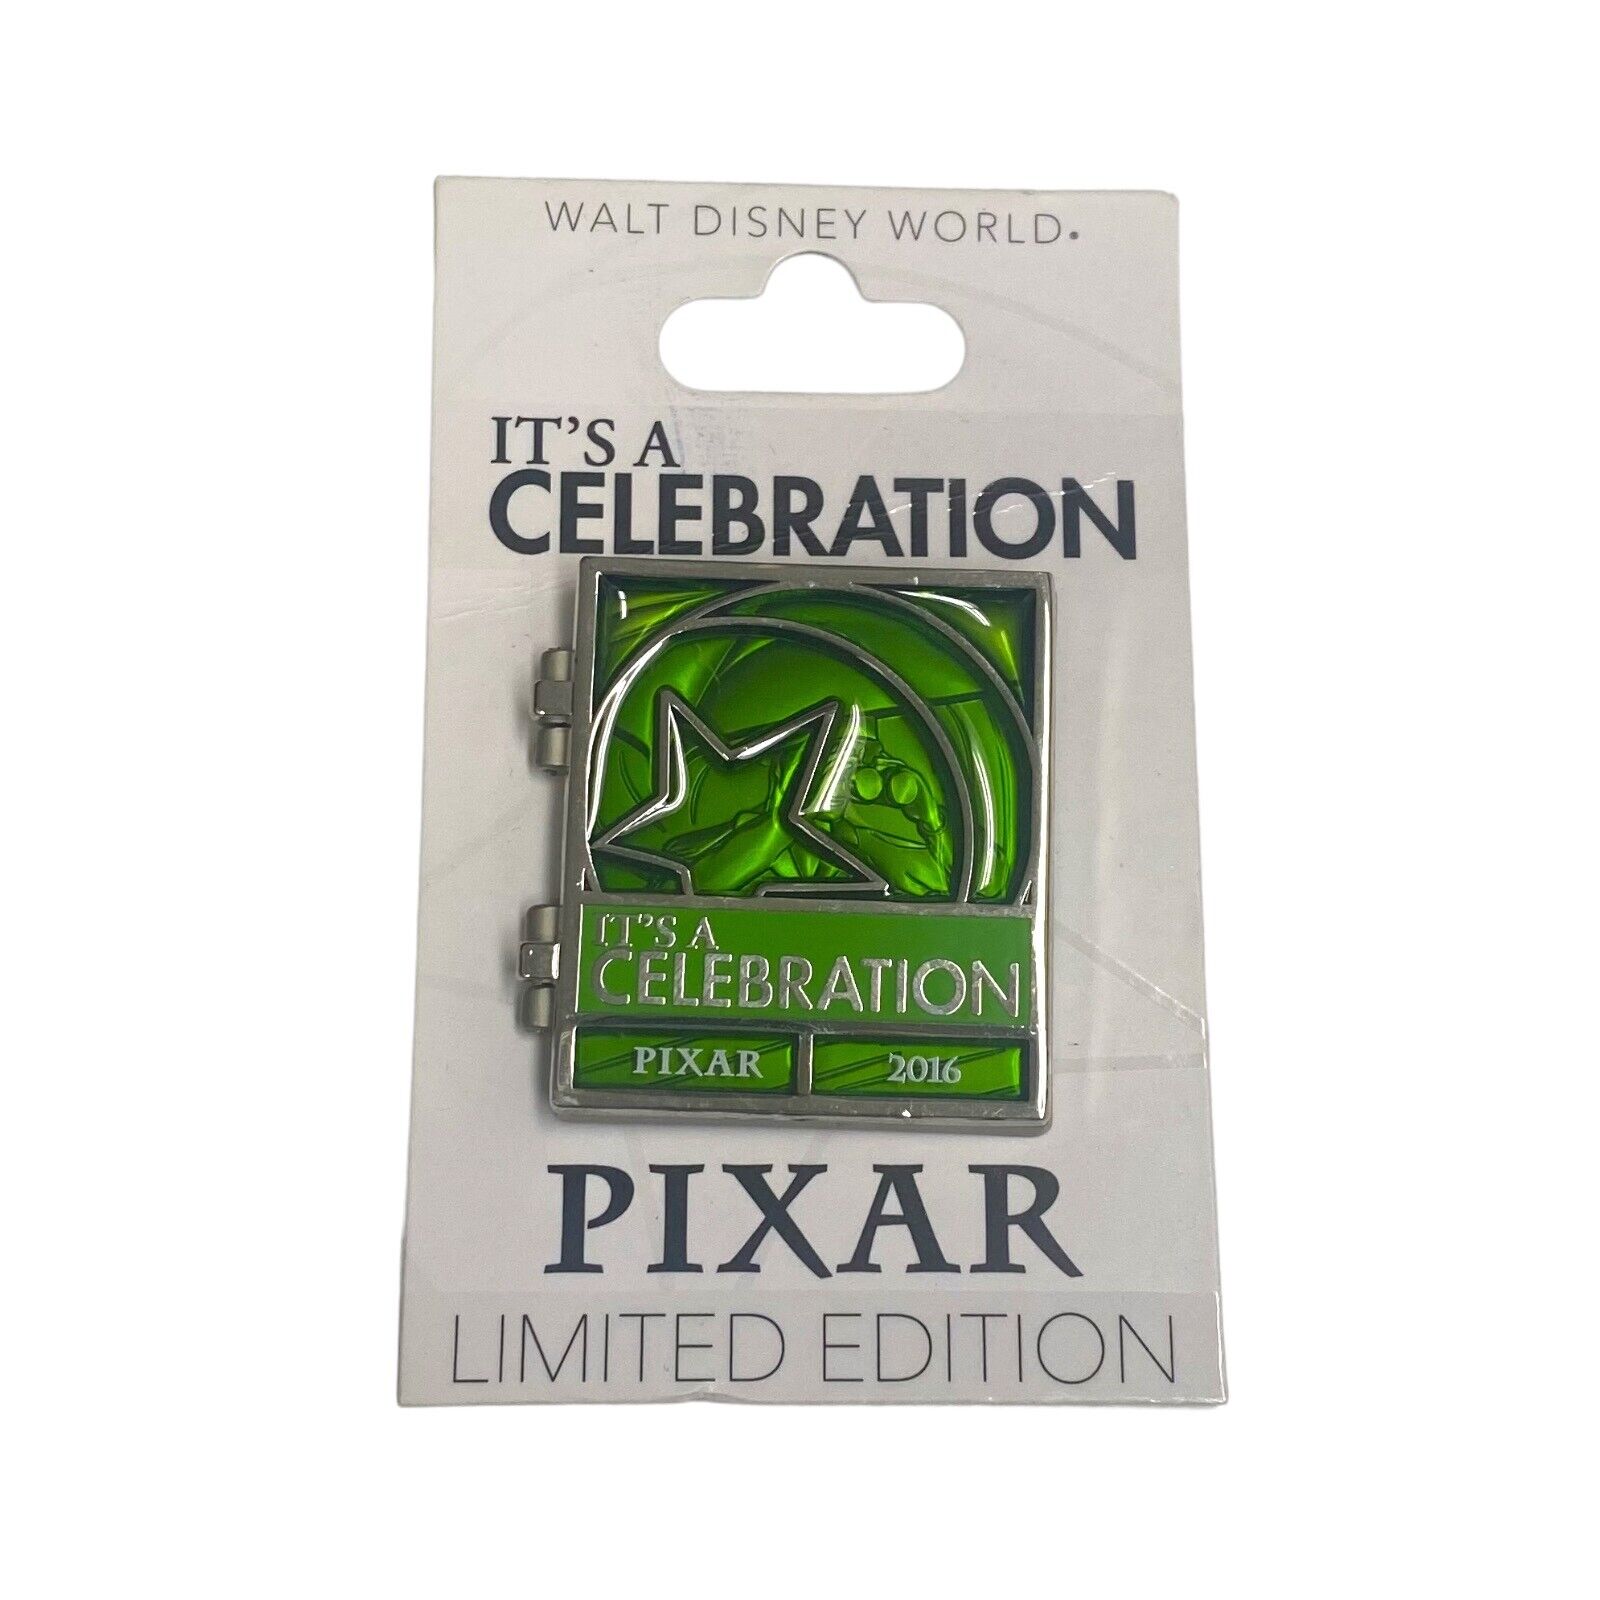 2015 Disney Parks Pixar It’s a Celebration Countdown Pin - Little Green Men